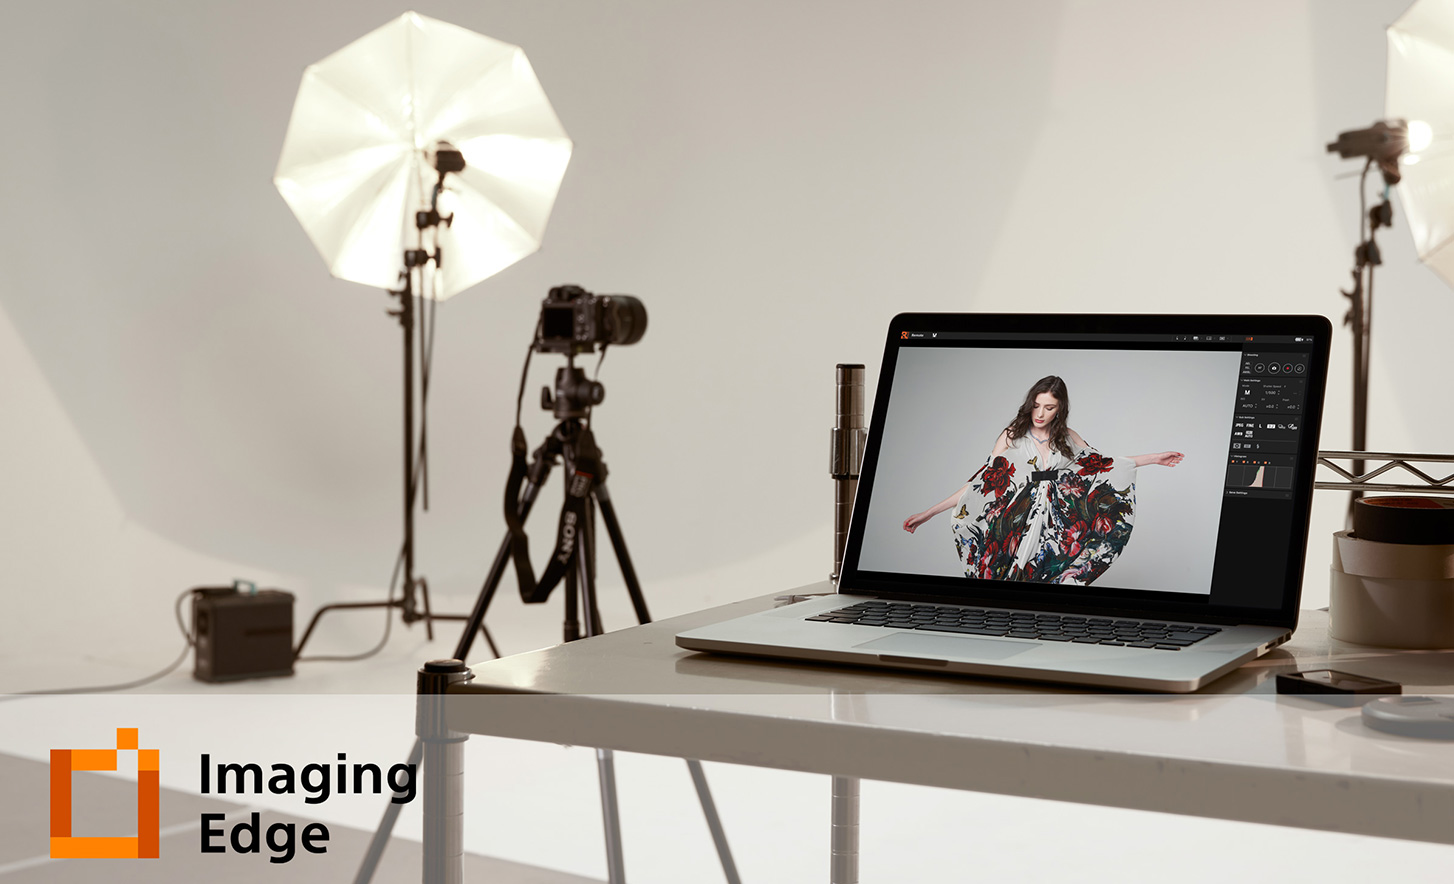 Изображение студии с логотипом приложения Imaging Edge Desktop